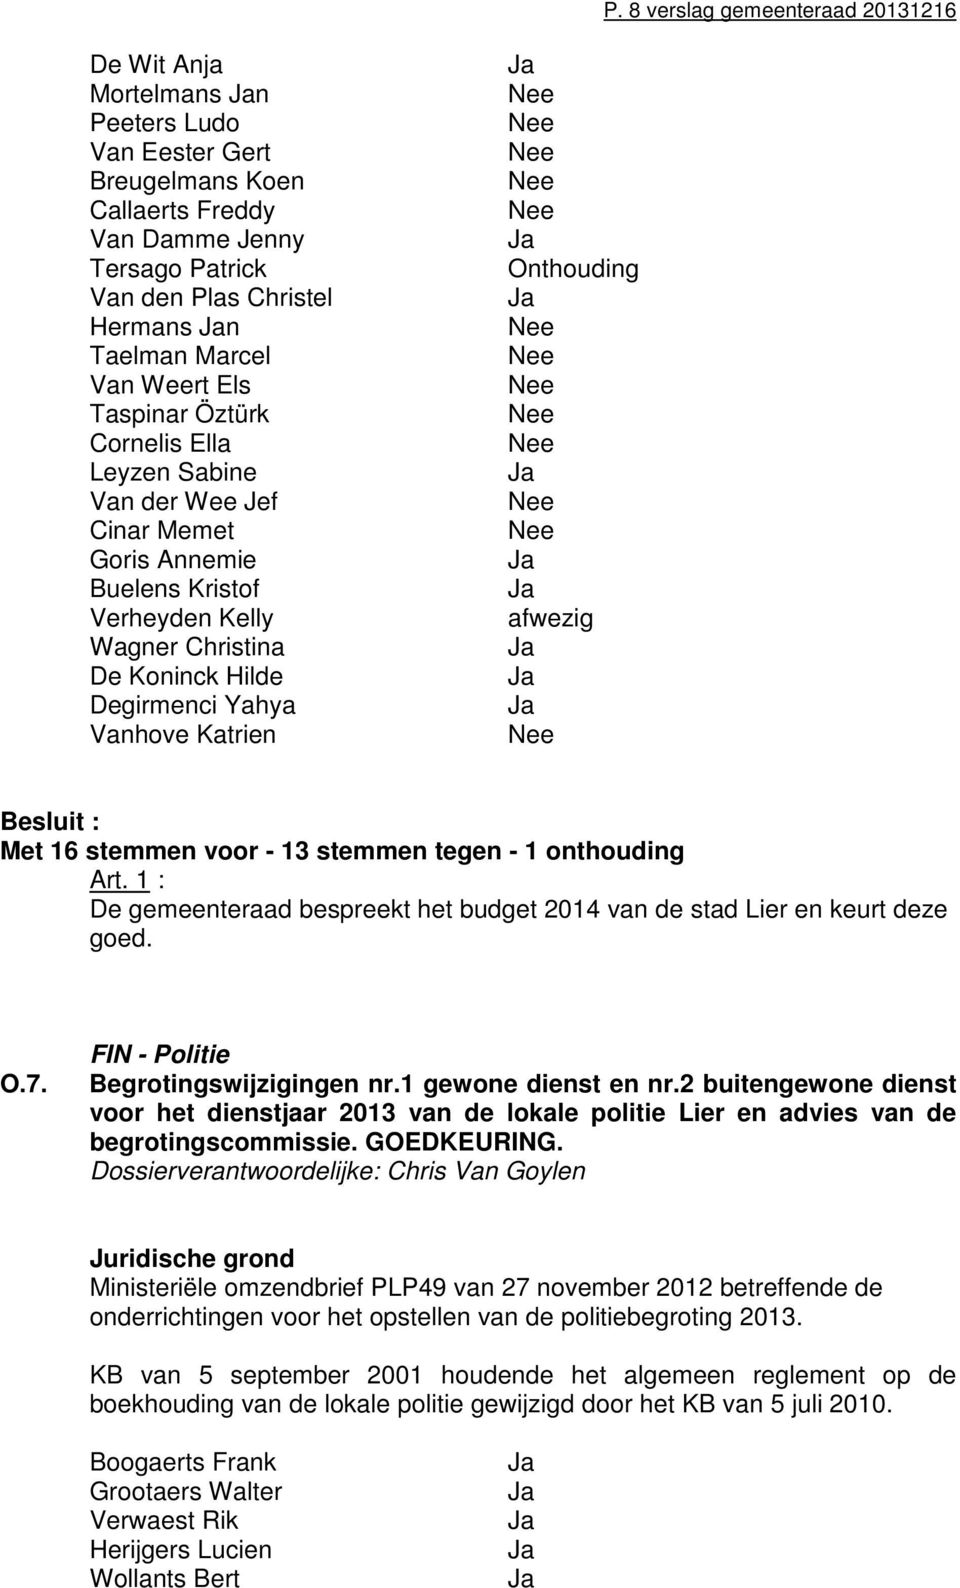 Katrien afwezig Besluit : Met 16 stemmen voor - 13 stemmen tegen - 1 onthouding Art. 1 : De gemeenteraad bespreekt het budget 2014 van de stad Lier en keurt deze goed. O.7.